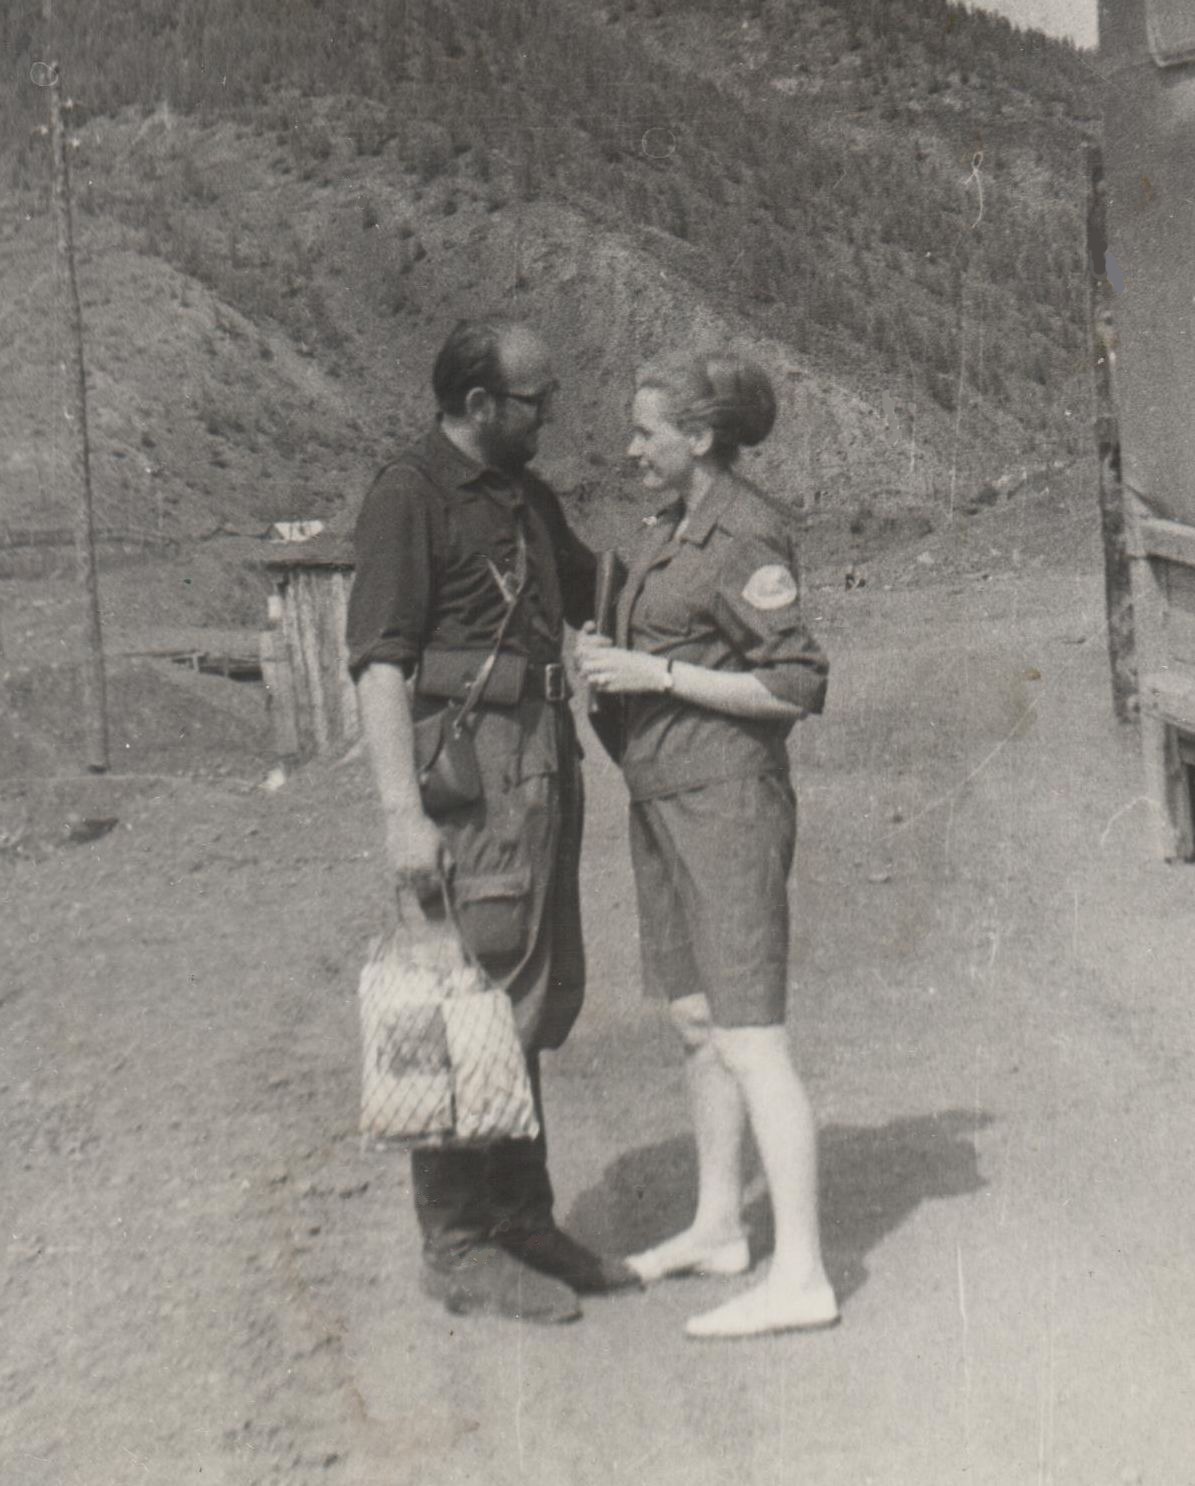 Jakutija. Pobiedos aukso kasykla Ust-Neros rajone. Atsisveikinimas su Birute, išeinanat pėsčiomis per Čerskio kalnagūbrį prie Kolymos upės. 1968 m. liepos 12 d.